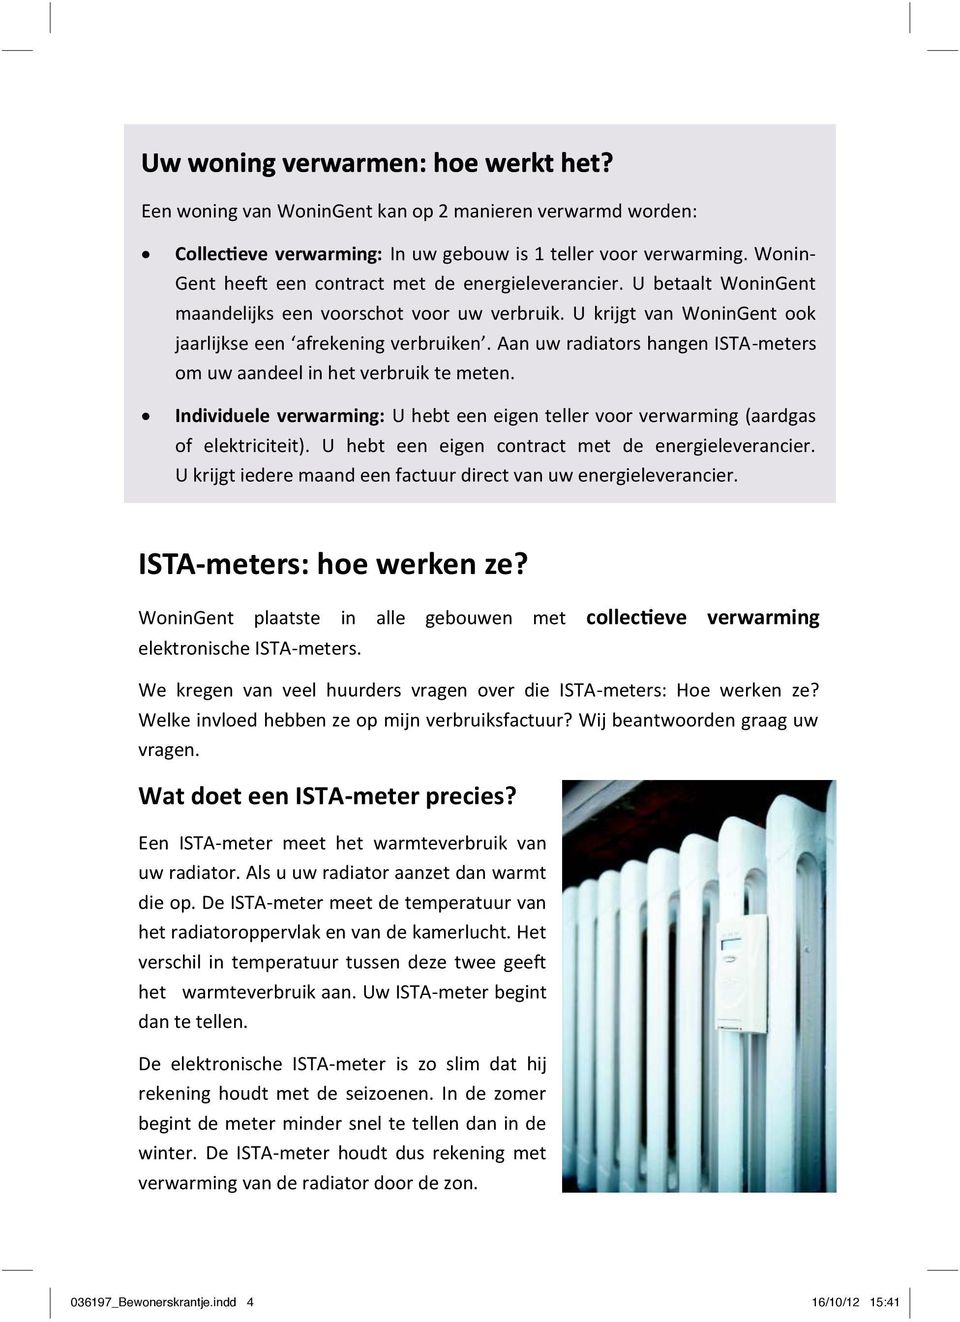 Aan uw radiators hangen ISTA-meters om uw aandeel in het verbruik te meten. Individuele verwarming: U hebt een eigen teller voor verwarming (aardgas of elektriciteit).